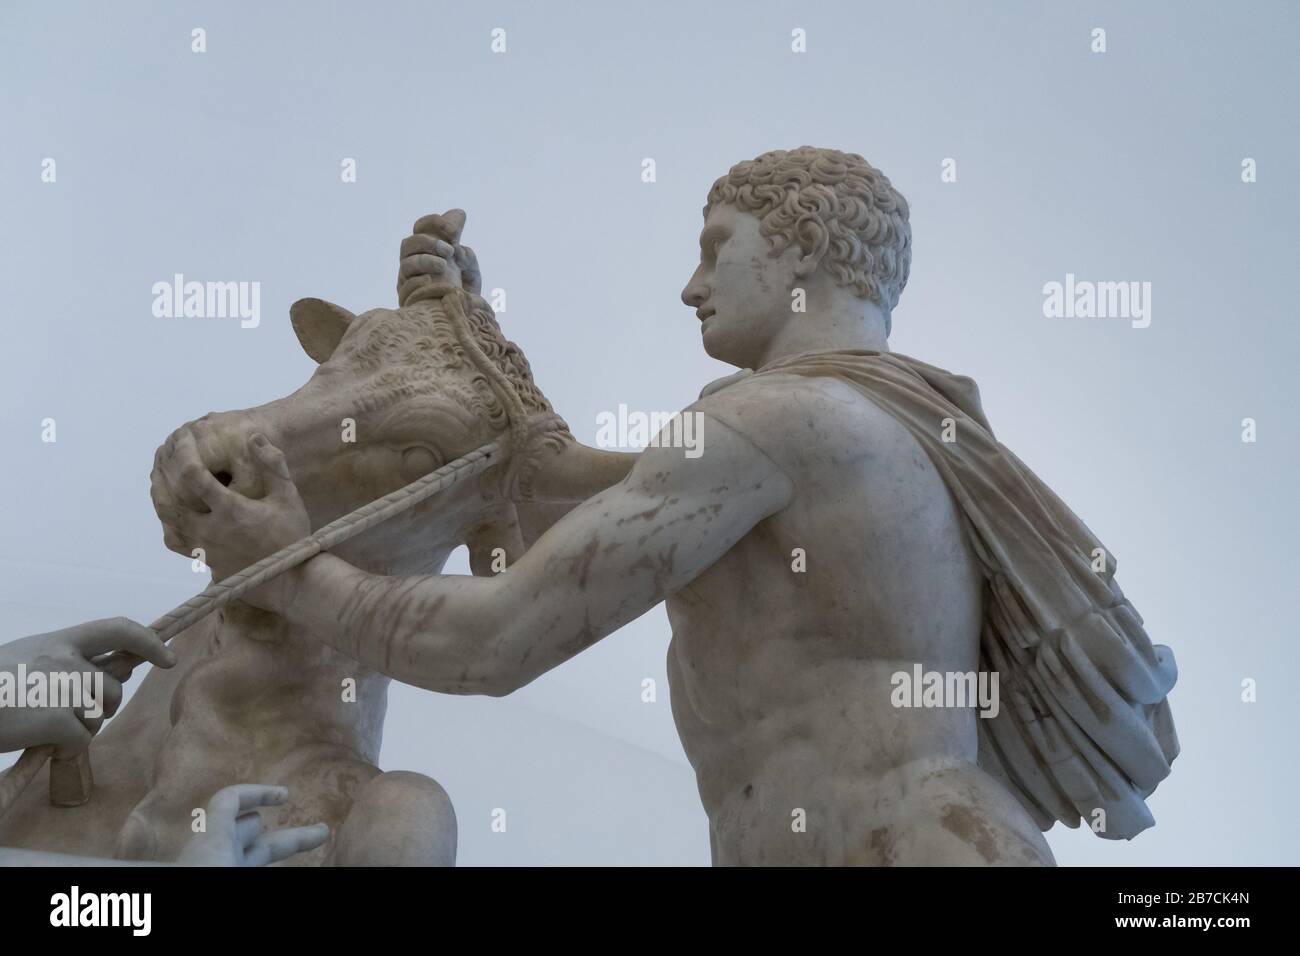 Una estatua de mármol del Toro Farnese también conocido como el Toro Farnese en el Museo Arqueológico de la Nación de Nápoles en Italia Foto de stock